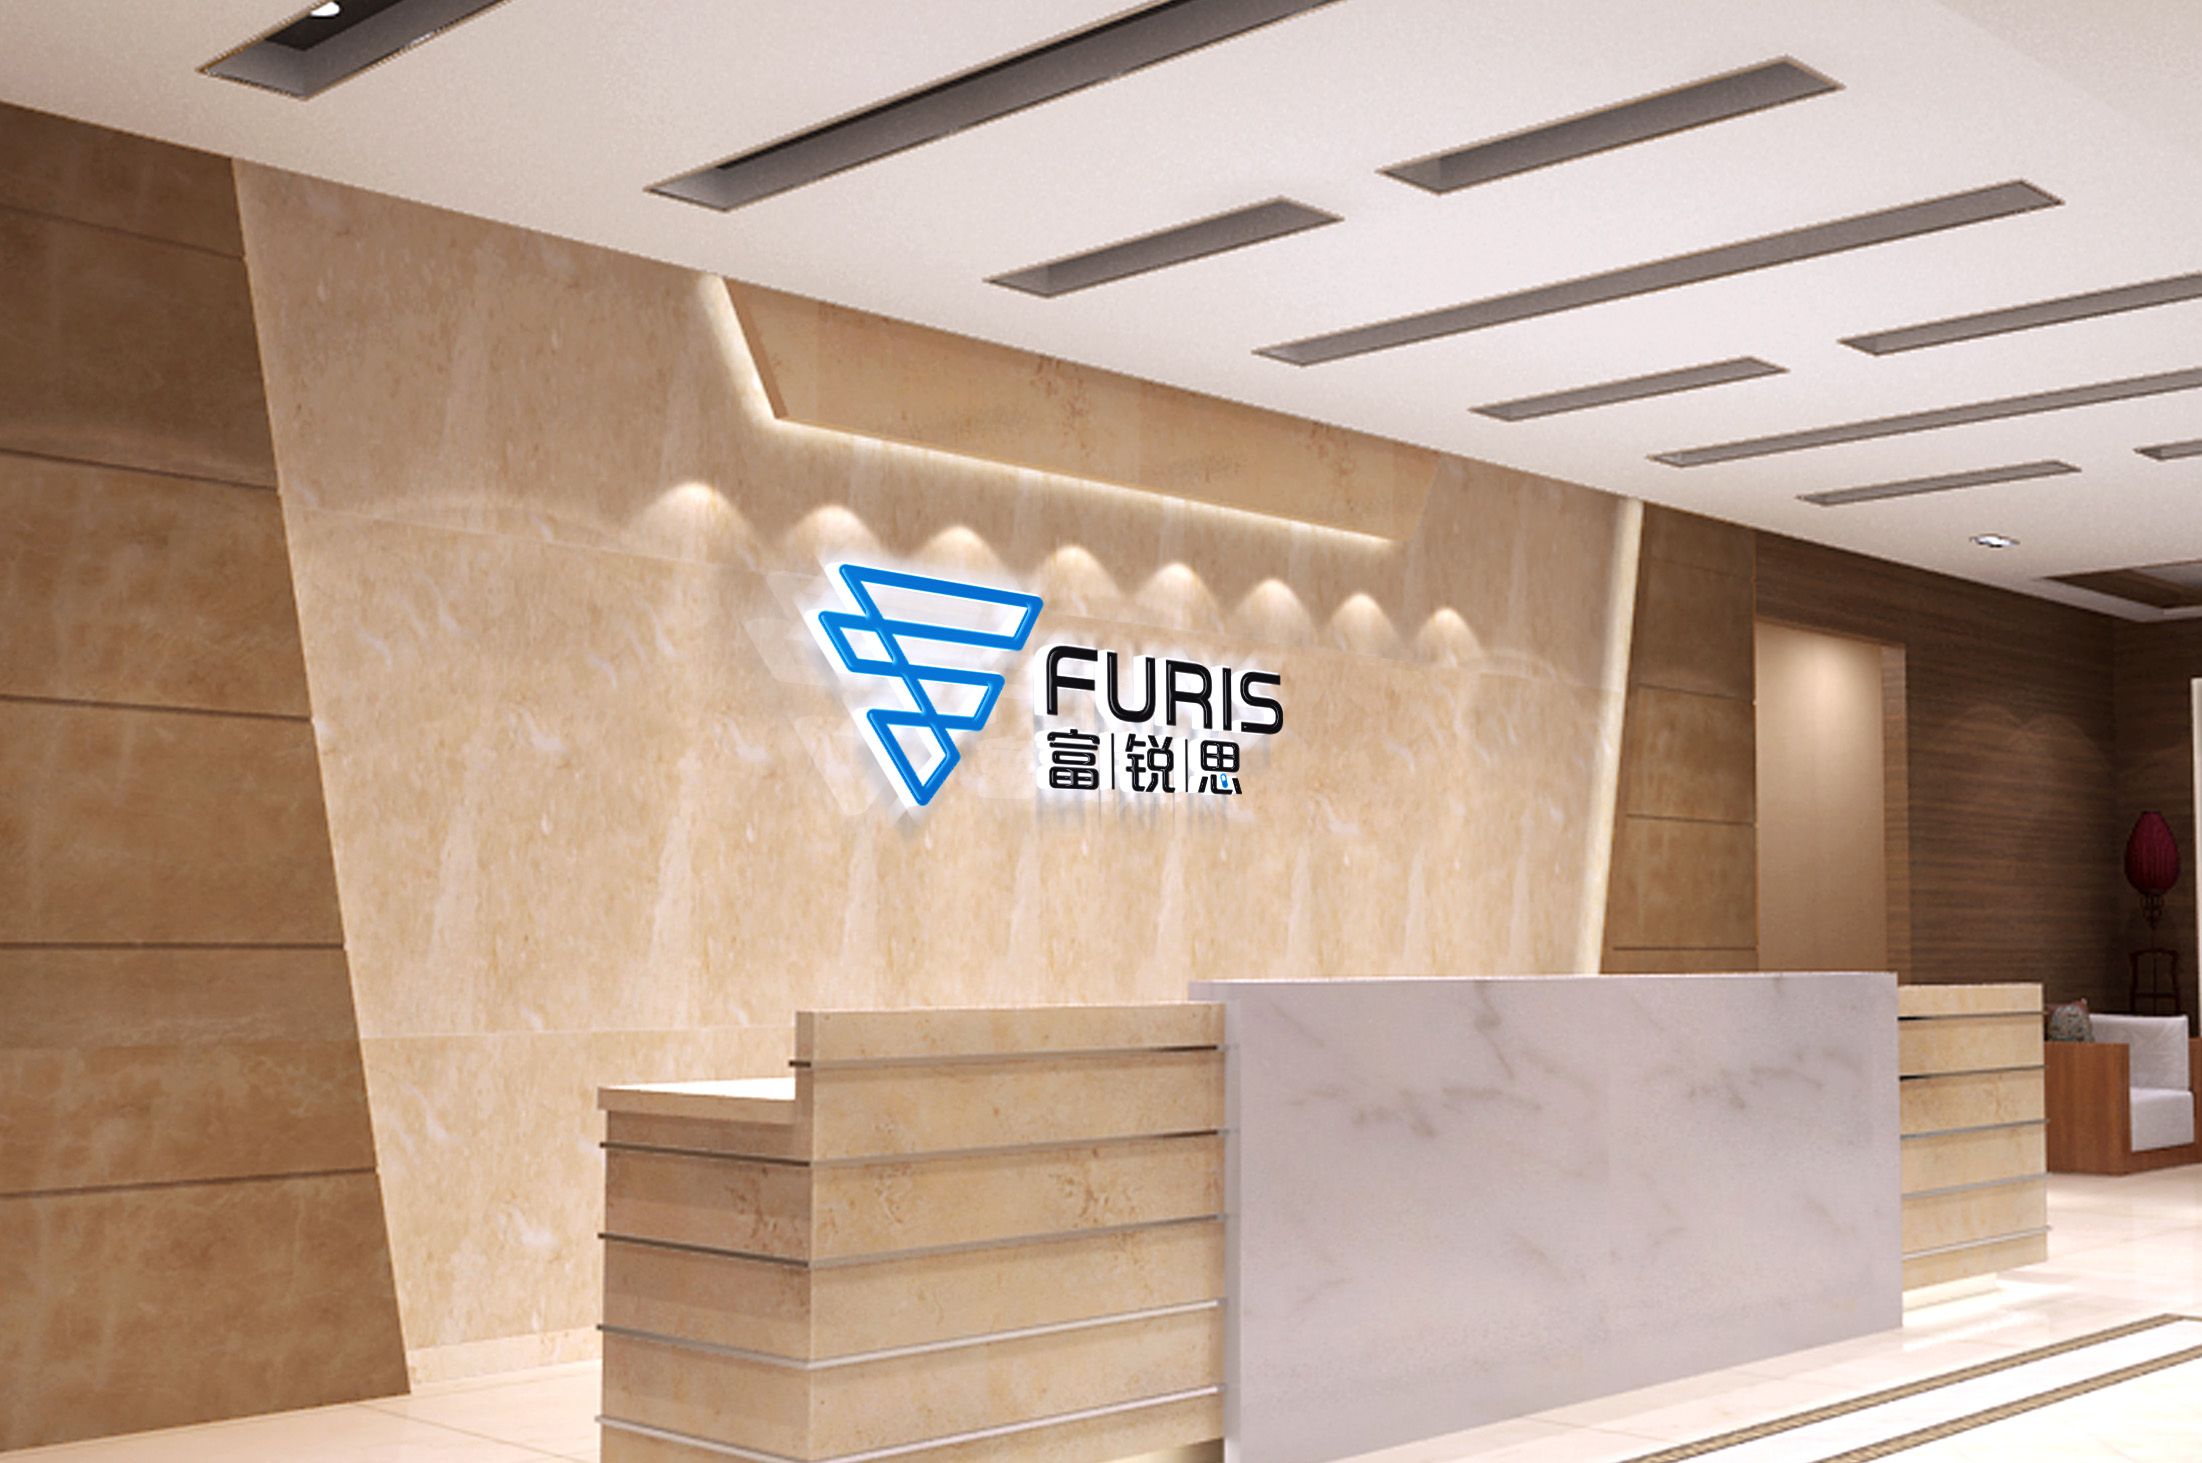 RUIAN FURIS IMPORT & EXPORT CO., LTD.